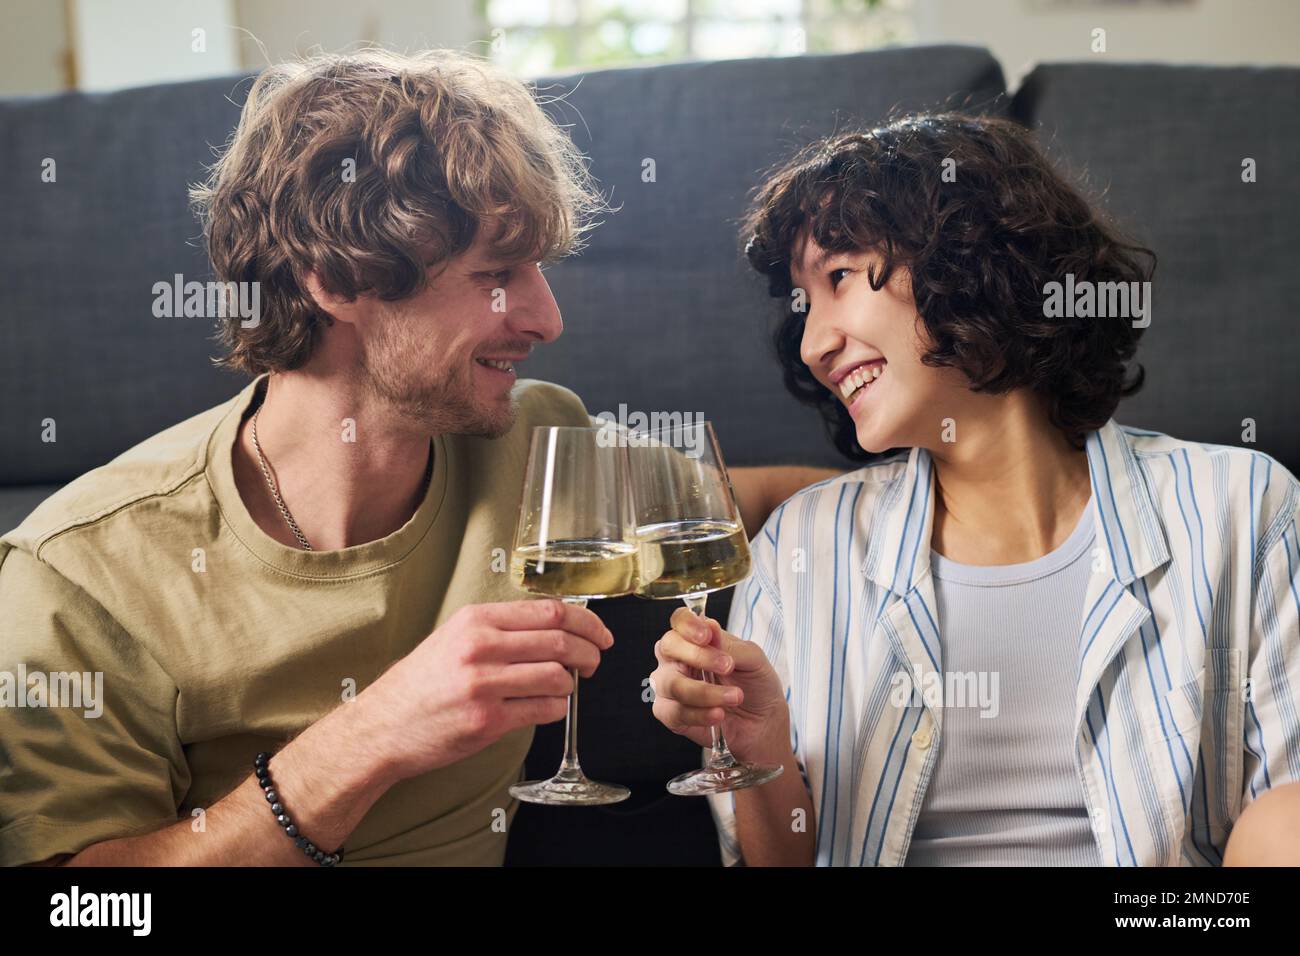 Junger, fröhlicher Ehemann und Ehefrau, die mit Champagnerflöten klingeln und sich mit einem Lächeln anschauen, während sie sich zu Hause auf der Couch entspannen Stockfoto